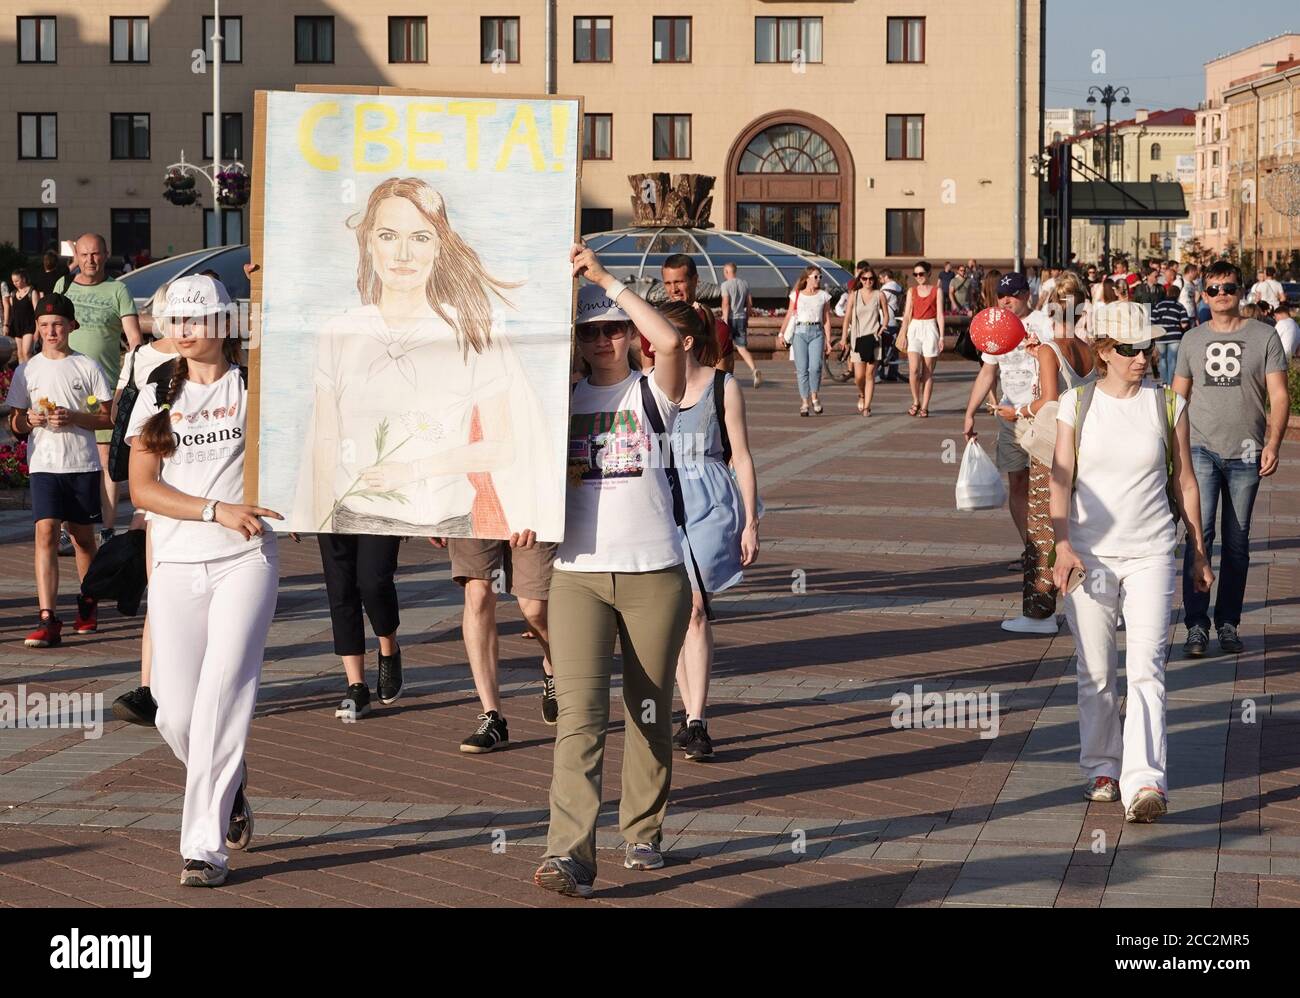 Minsk, Bélarus. 17 août 2020. Deux femmes portent une photo du candidat présidentiel oppositionnel S. Tikhanovskaya, qui revendique la victoire aux élections du 9 août, en marge d'une manifestation sur la place de l'indépendance. Elle est prête à prendre l'initiative dans le pays après la démission du chef de l'État A. Loukachenko. Les manifestants réclament la démission de Loukachenko. Crédit : Ulf Mauder/dpa/Alay Live News Banque D'Images